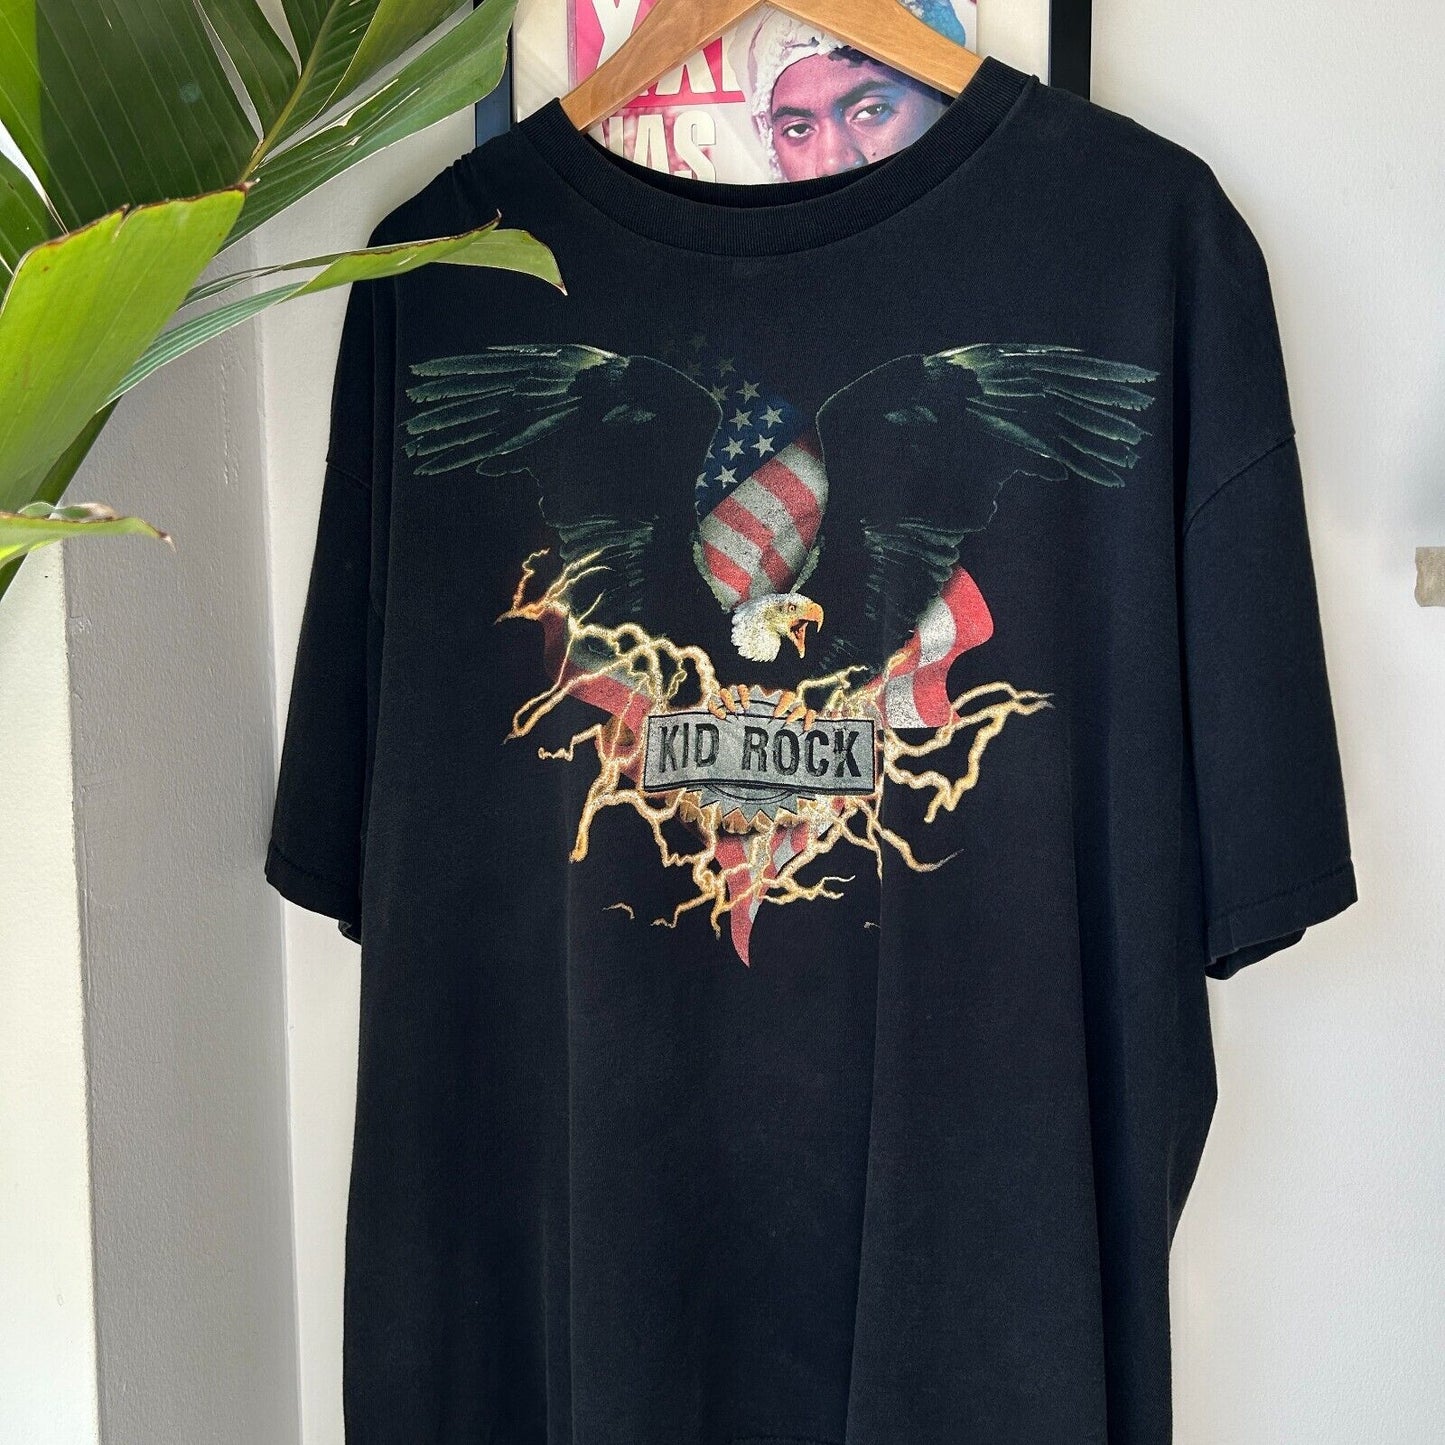 VINTAGE 2000 | KID ROCK Live Tour Band T-Shirt sz XL Adult